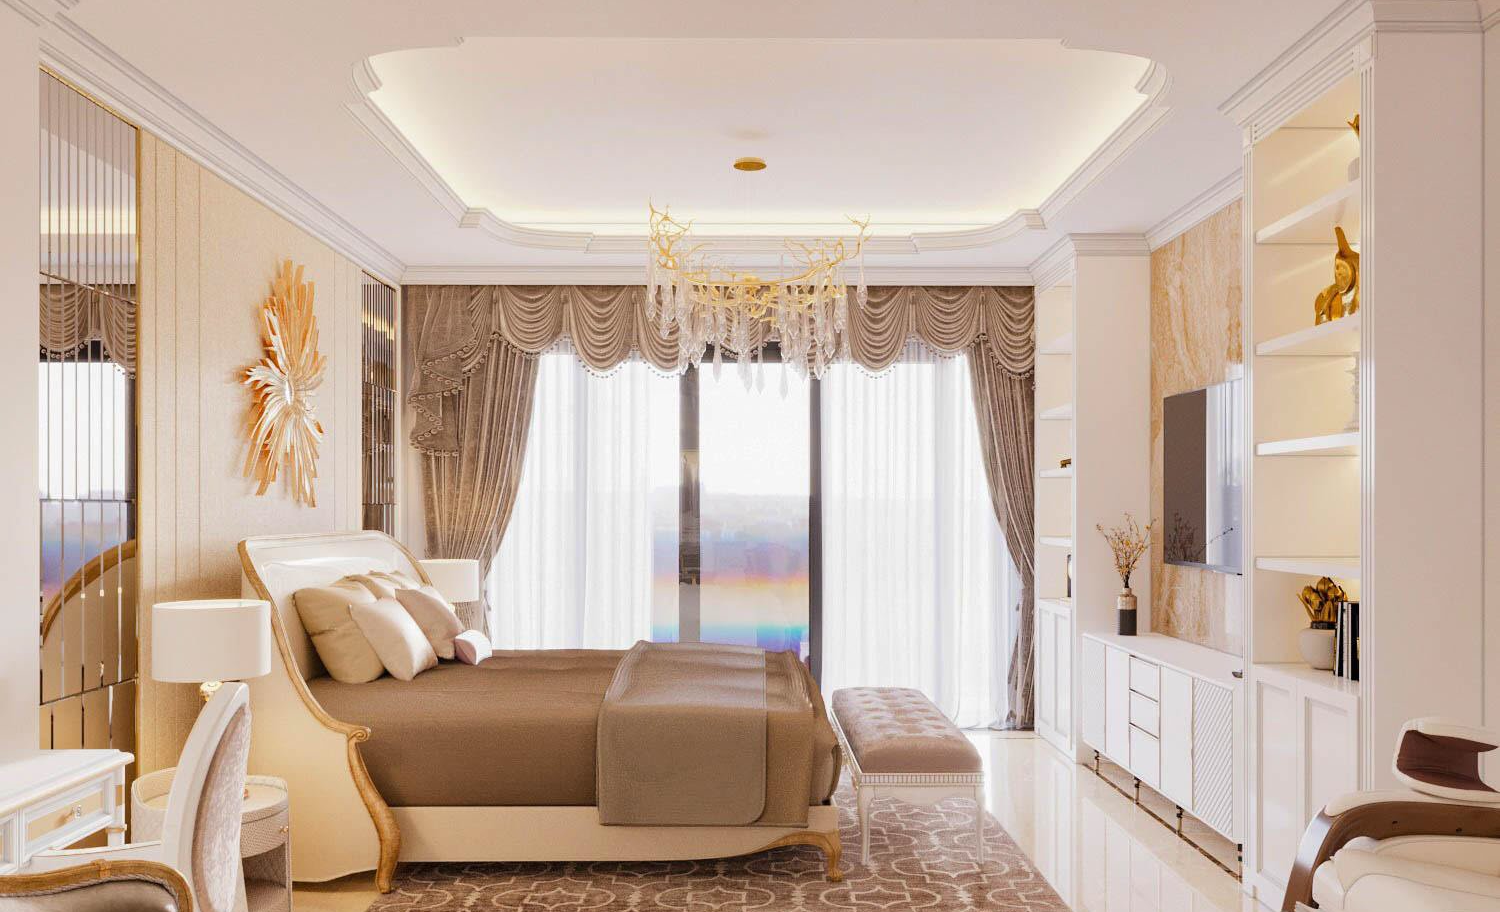 phòng ngủ tân cổ điển với cửa sổ lớn, rèm cửa màu be, đèn chùm và họa tiết mặt trời trang trí đầu giường